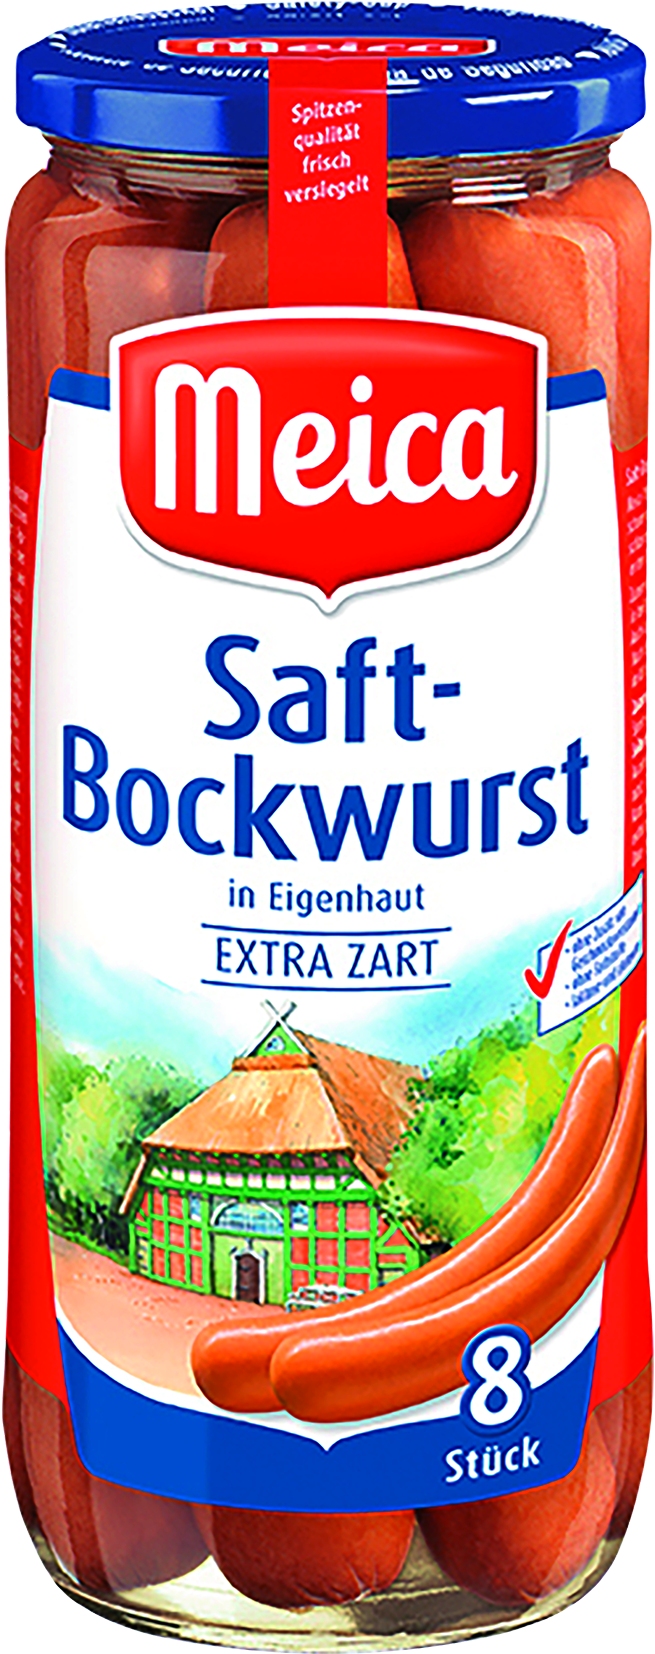 Saft-Bockwurst in Eigenhaut 8 St = 540gr